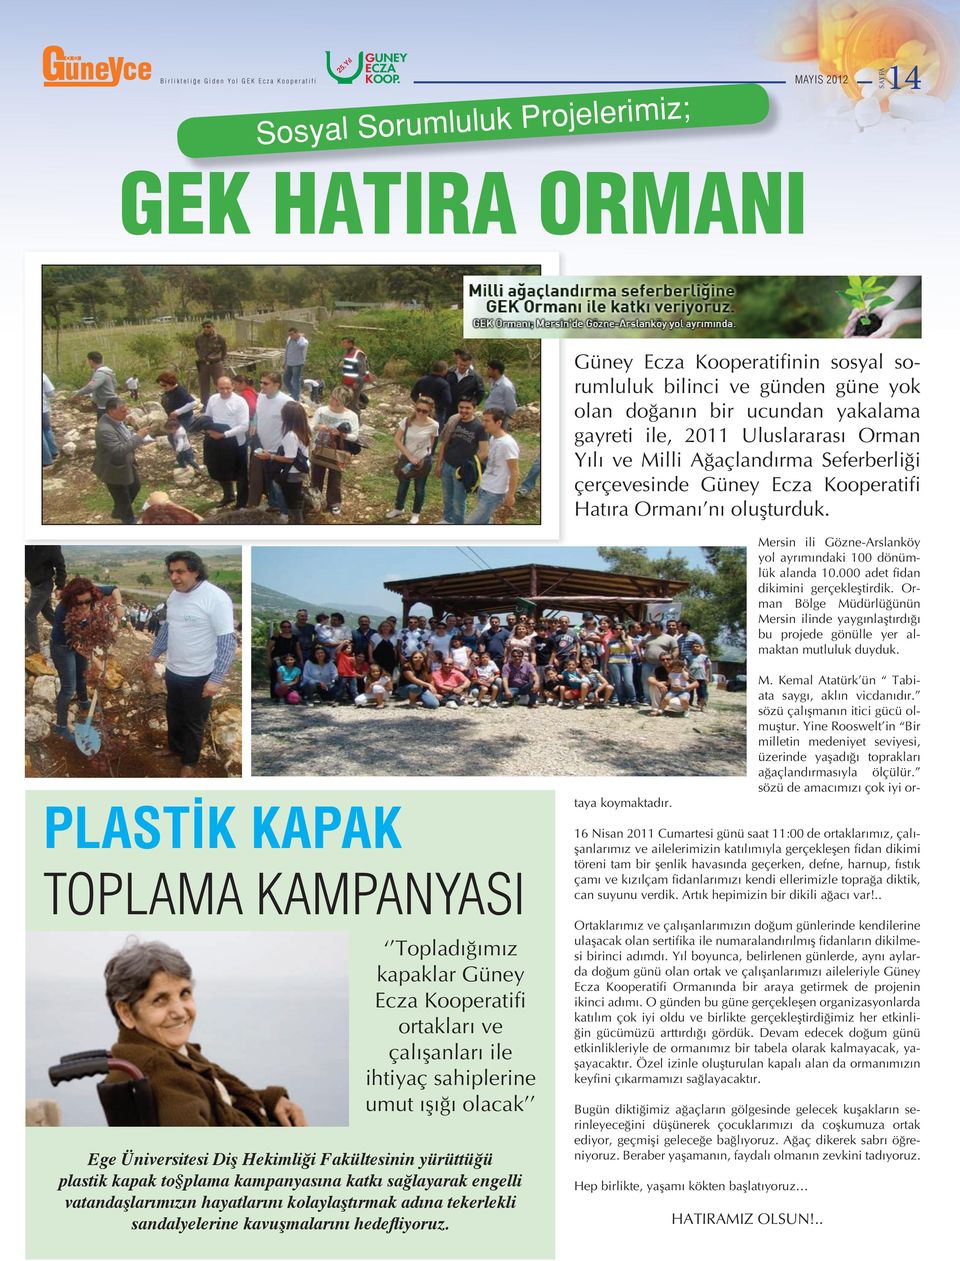 000 adet fidan dikimini gerçekleştirdik. Orman Bölge Müdürlüğünün Mersin ilinde yaygınlaştırdığı bu projede gönülle yer almaktan mutluluk duyduk.